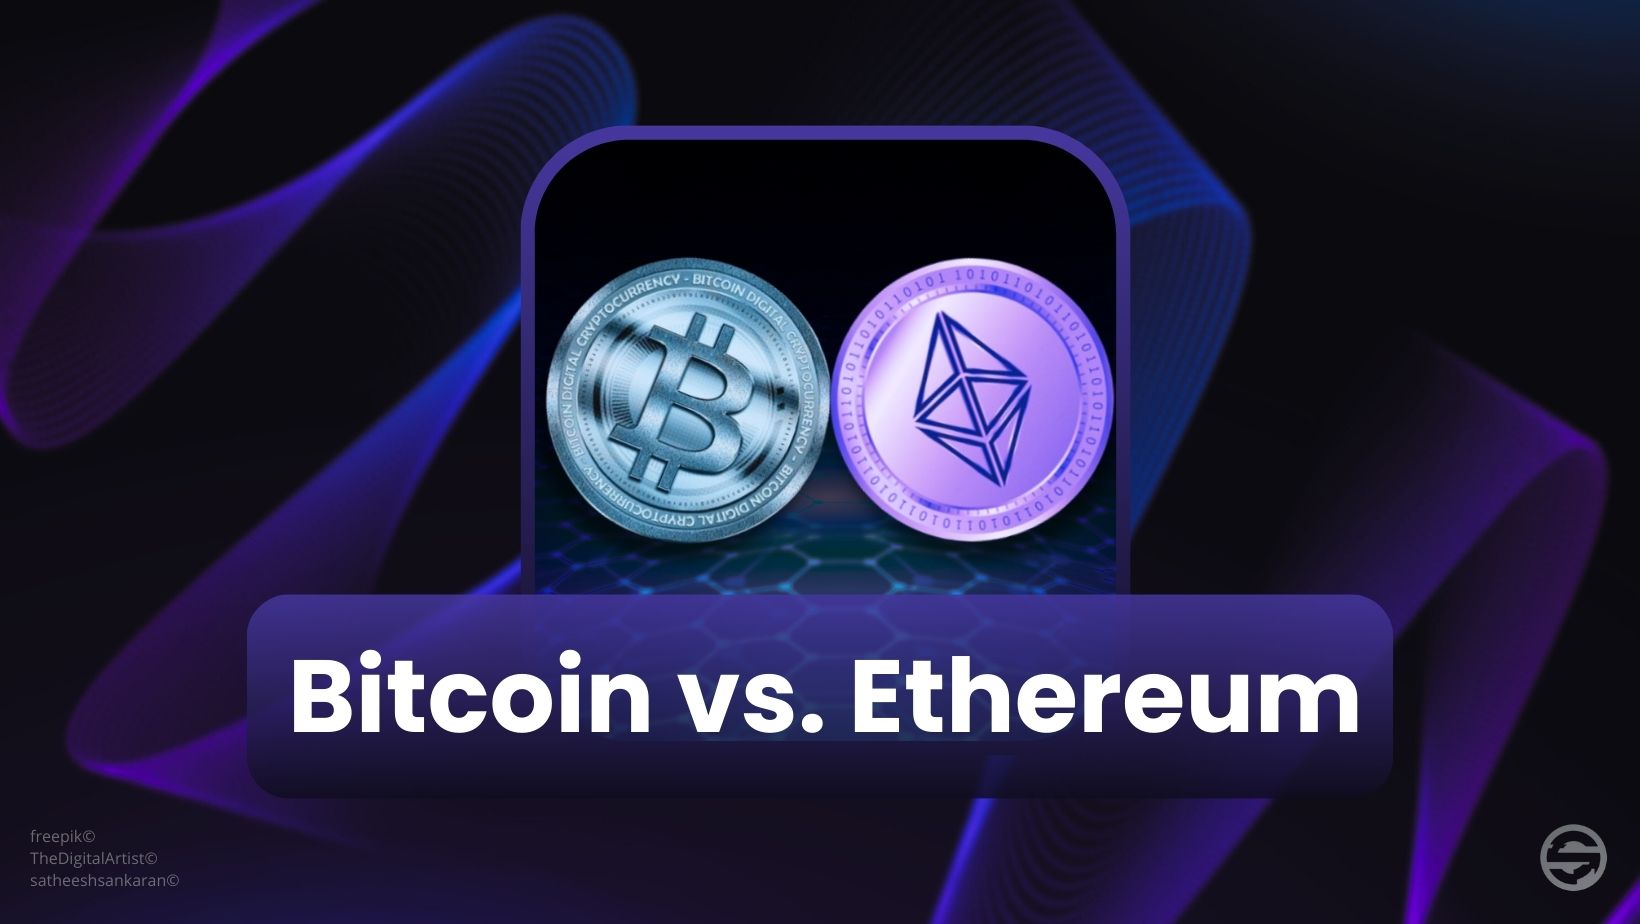 Les principales distinctions entre Bitcoin (BTC) et Ethereum (ETH)